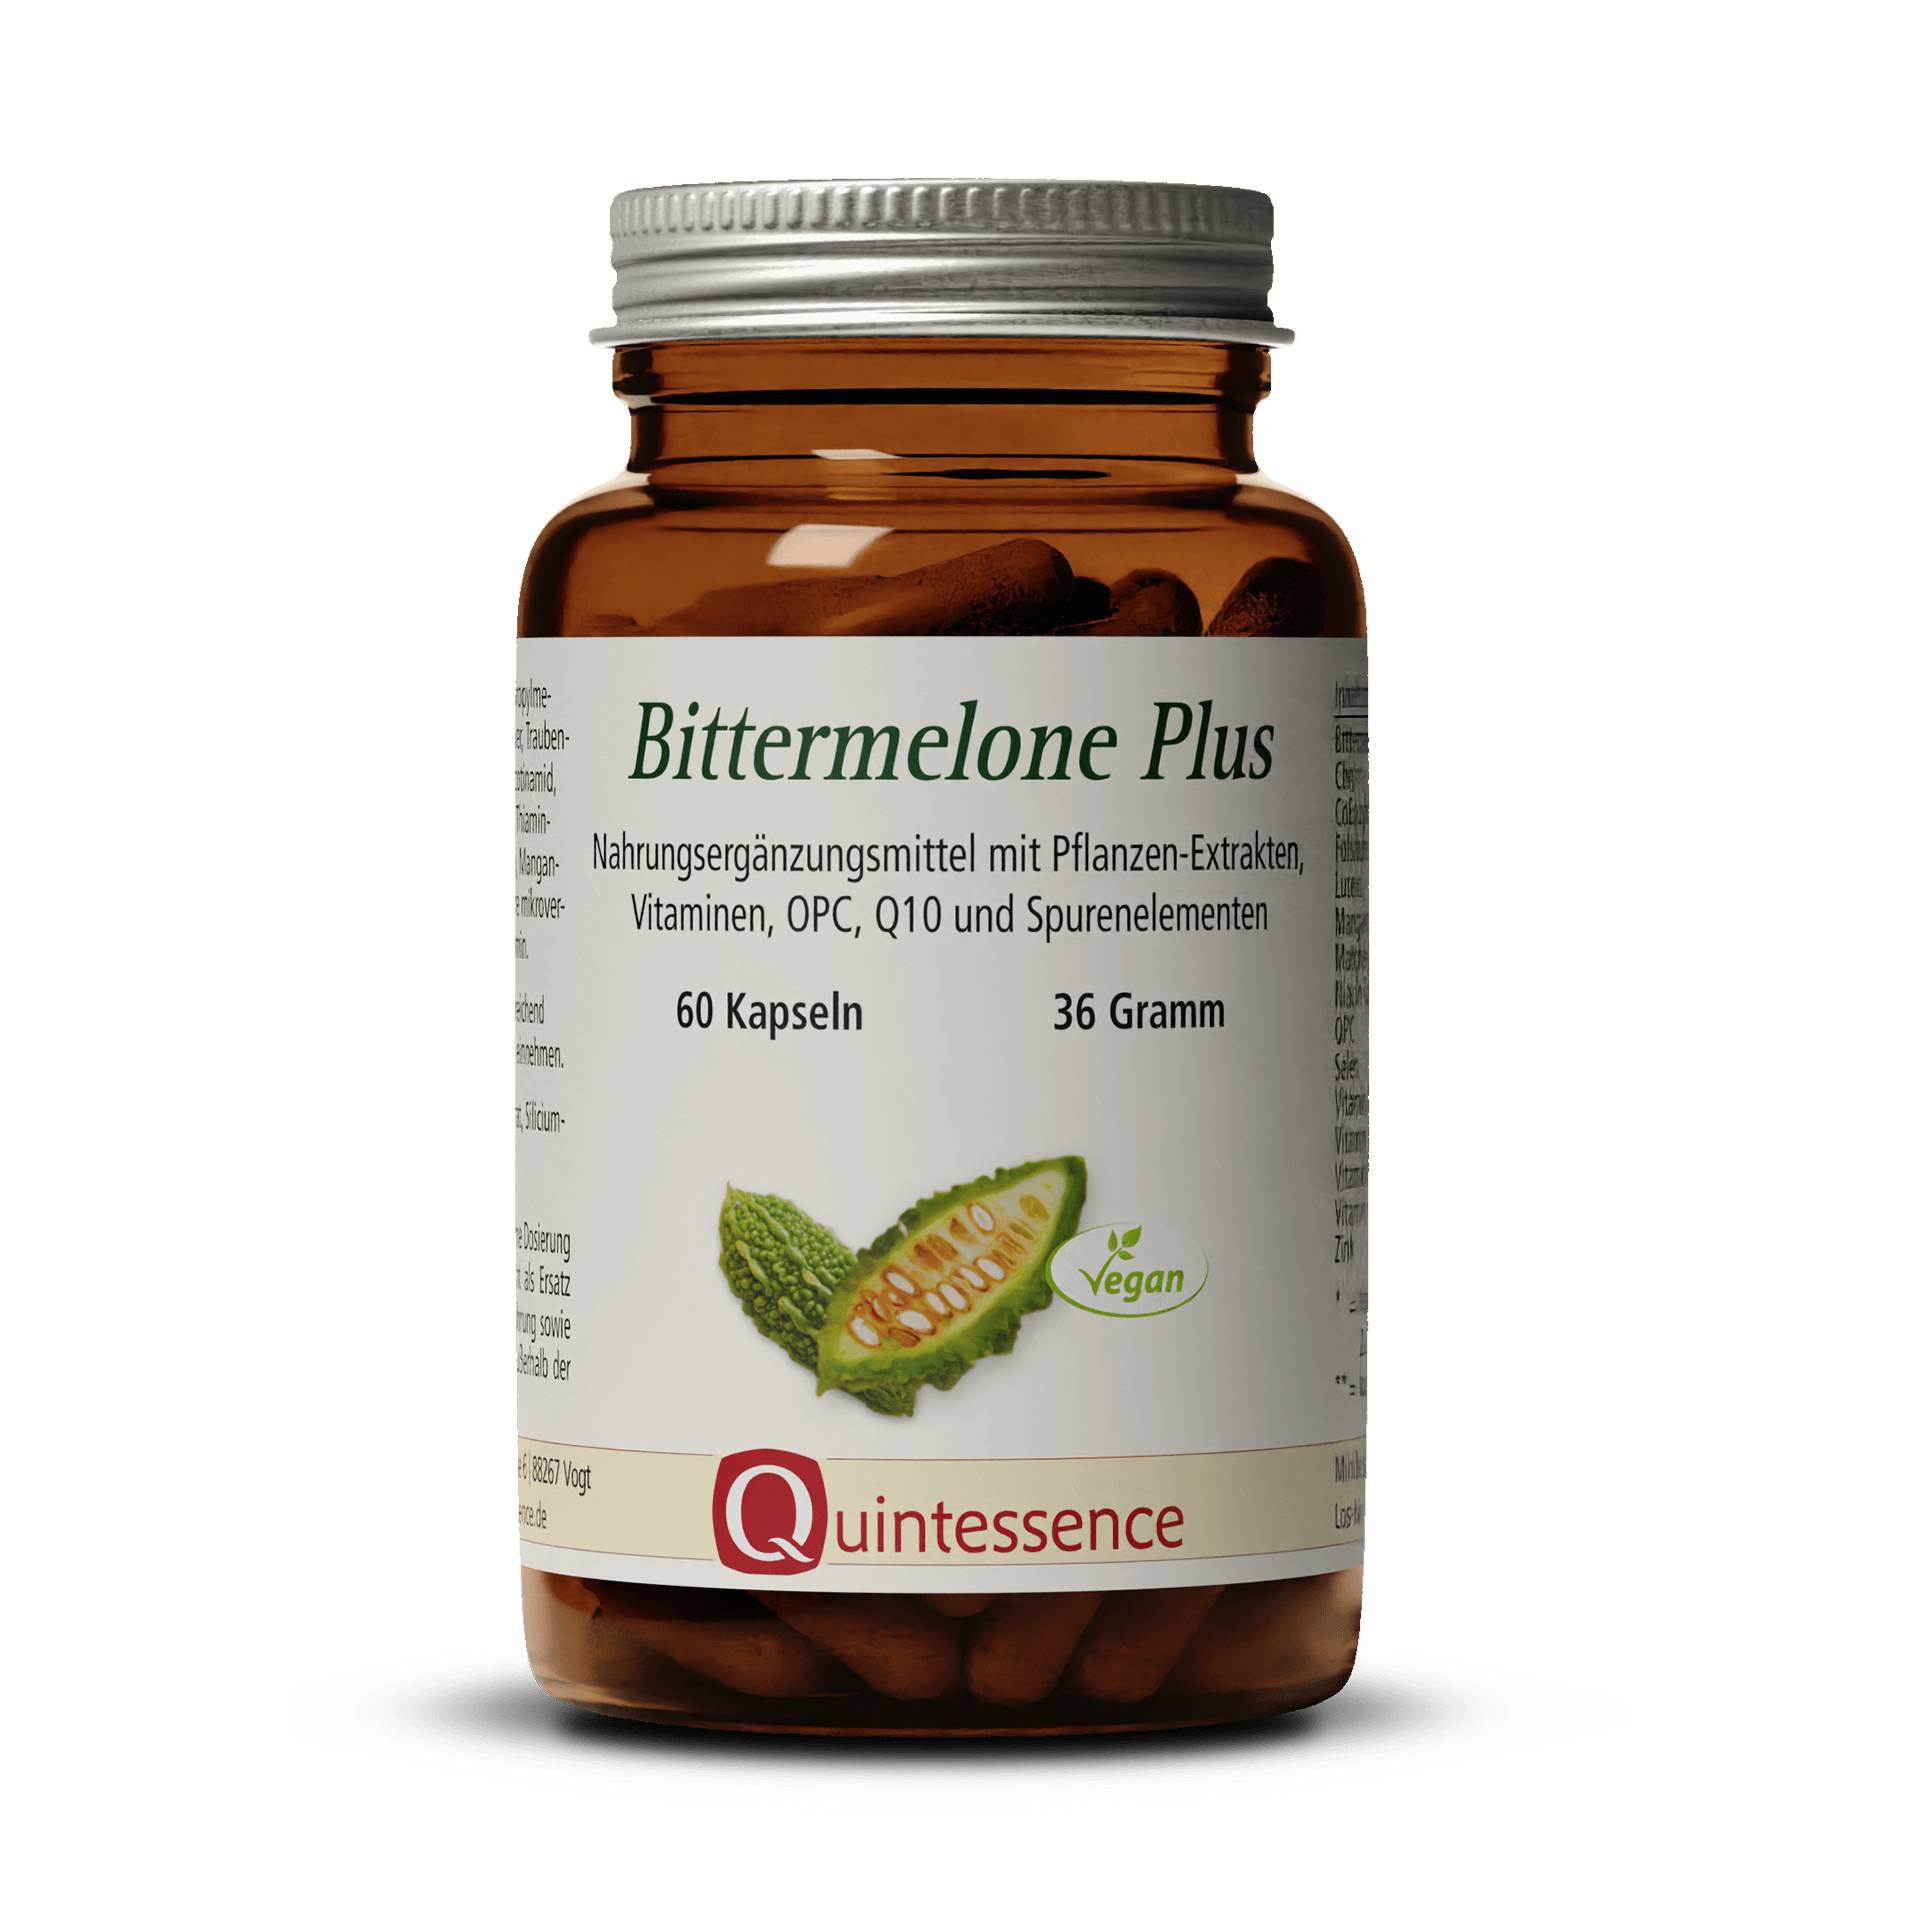 Bittermelone Plus 60 Kapseln - Vitalstoffreich - Mit CoEnzym Q10 Vitamine und Spurenelemente - Vegan - Quintessence von Quintessence